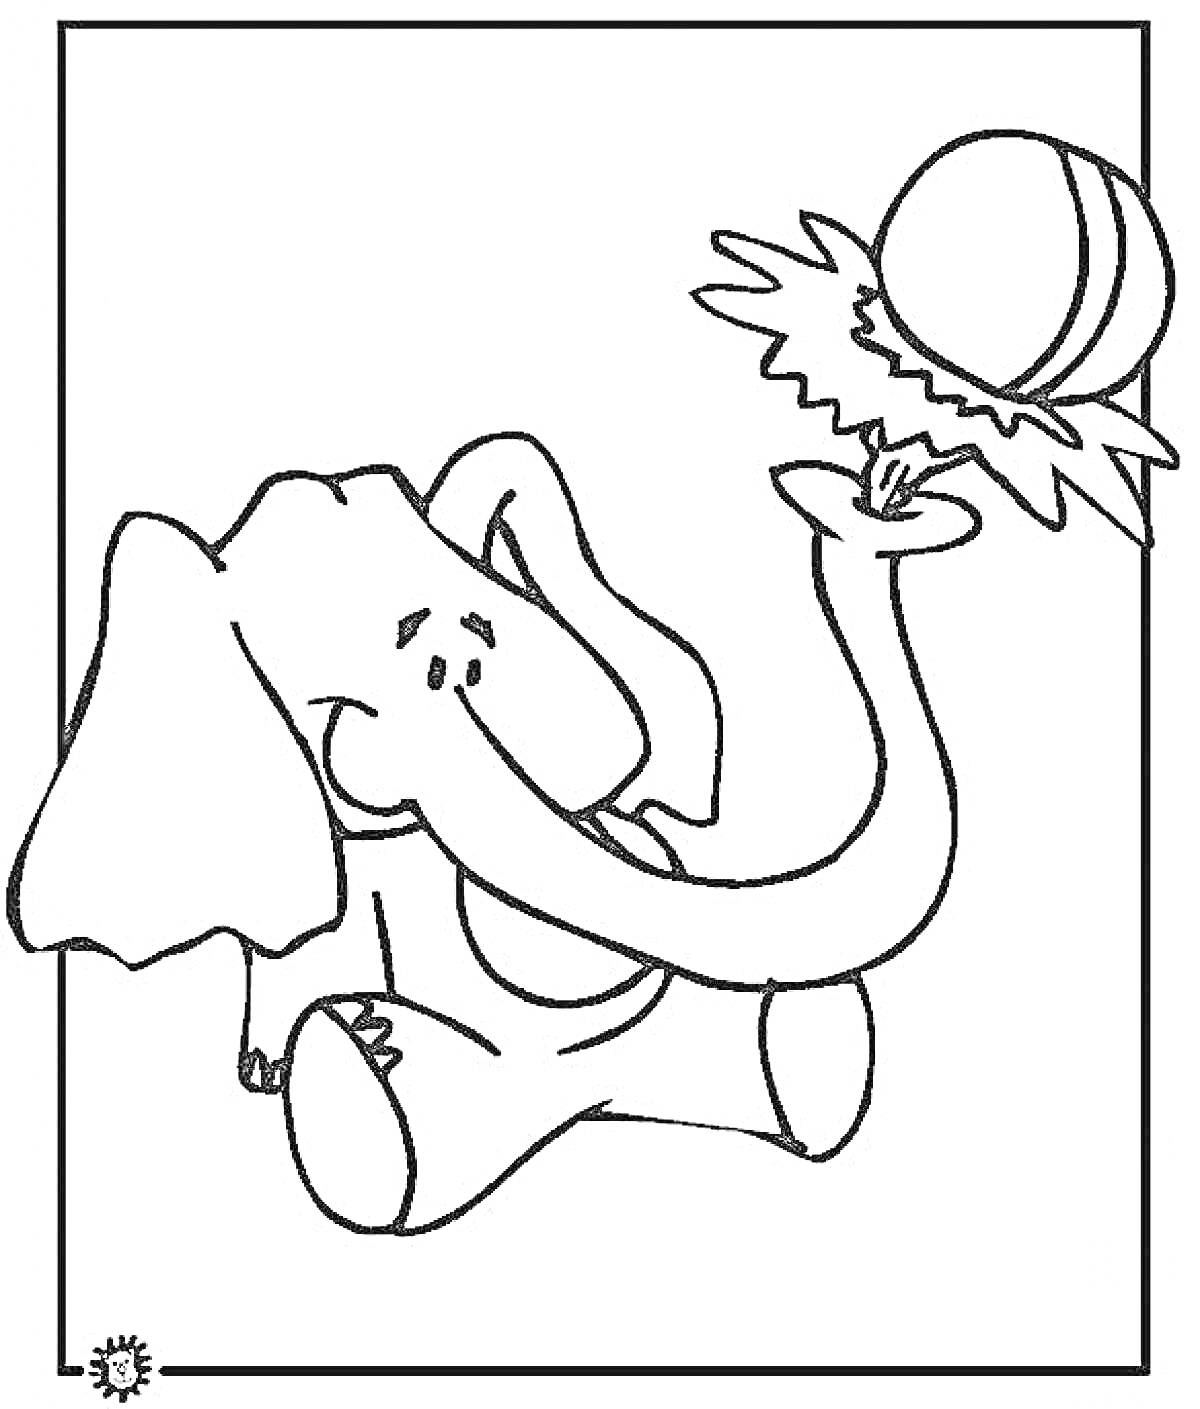 Слон с мячом на хоботе